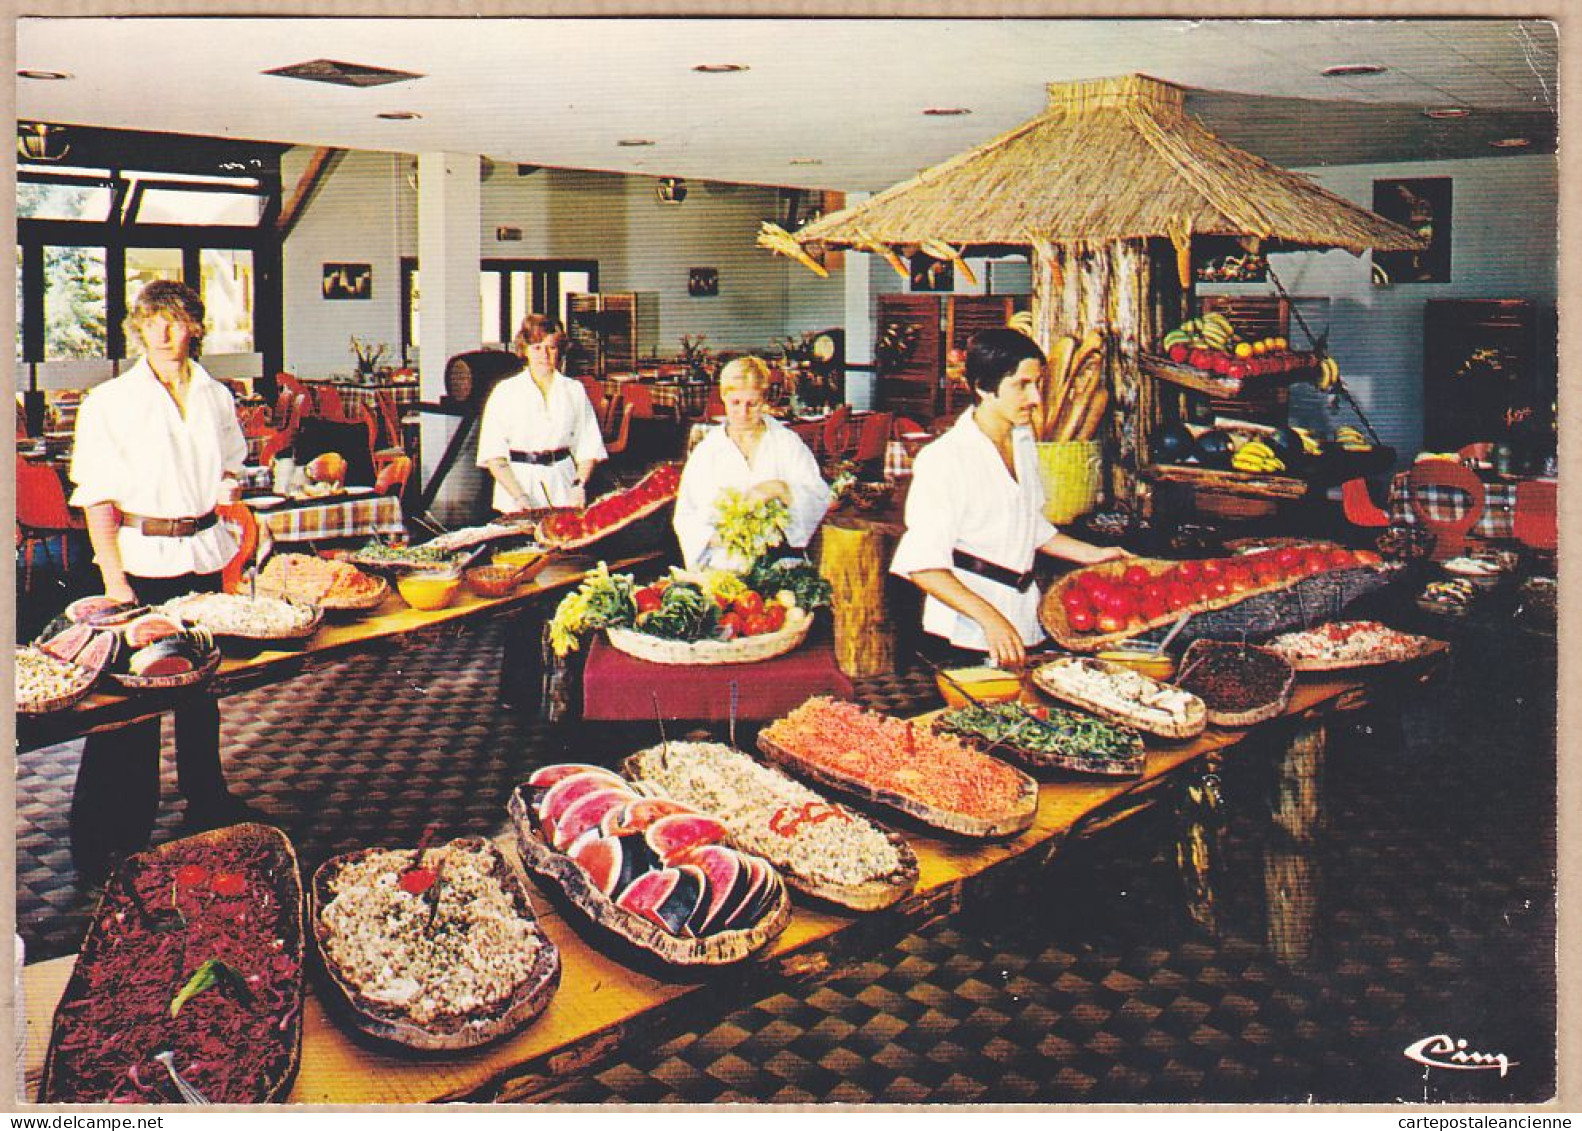 00678 ● BORMES-LES-MIMOSAS Var LA MANNE Village Vacances Le Restaurant Personnel Serveurs Buffet Libre-Service 1980s - Bormes-les-Mimosas